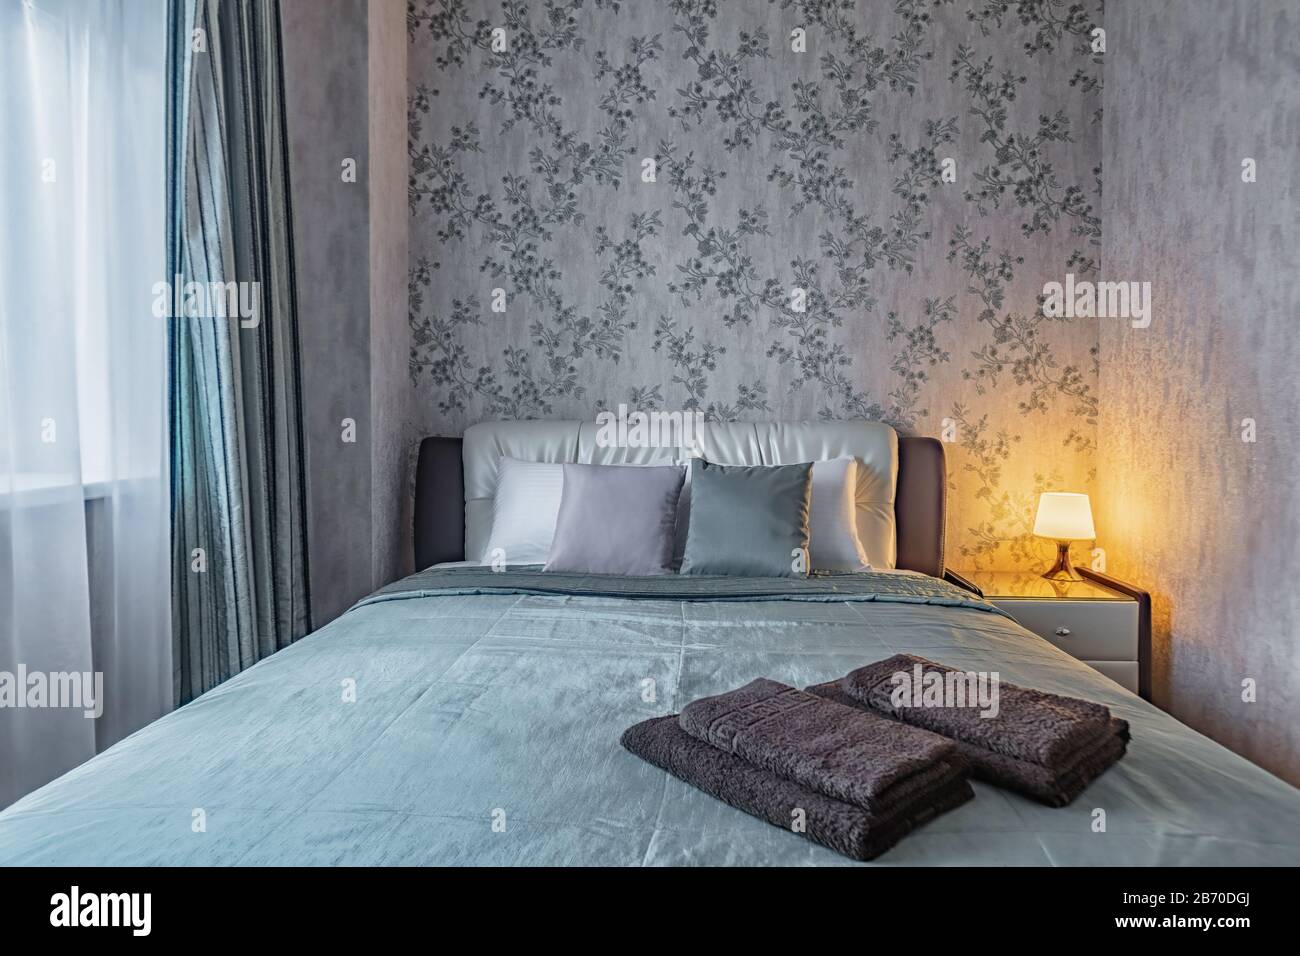 Frisches, sauberes, gemütliches Bett in einem kleinen, gemütlichen Schlafzimmer mit warmer Lampe am Abend Stockfoto